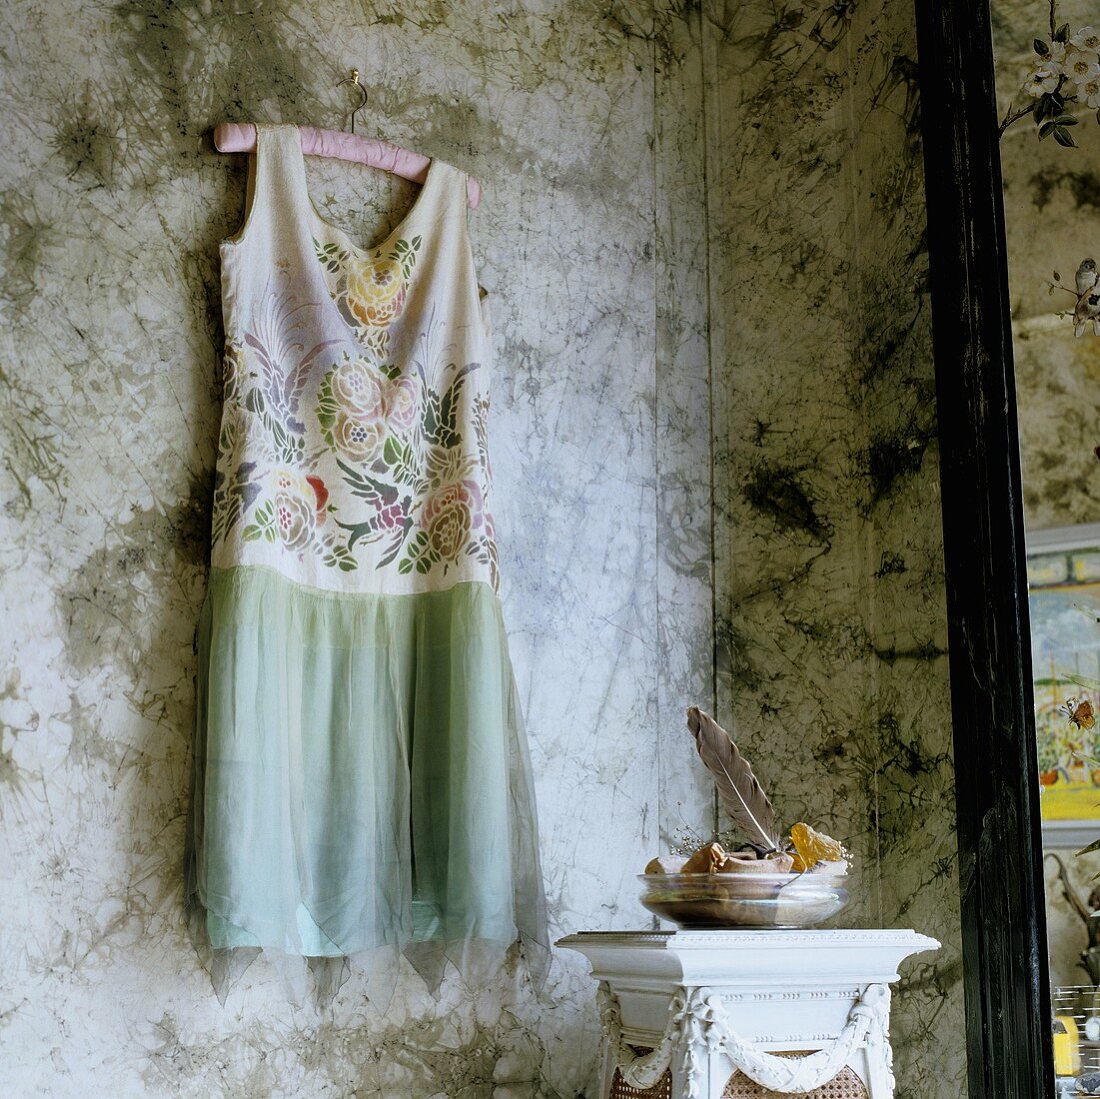 Sommerkleid auf Kleiderbügel an der Wand hängend